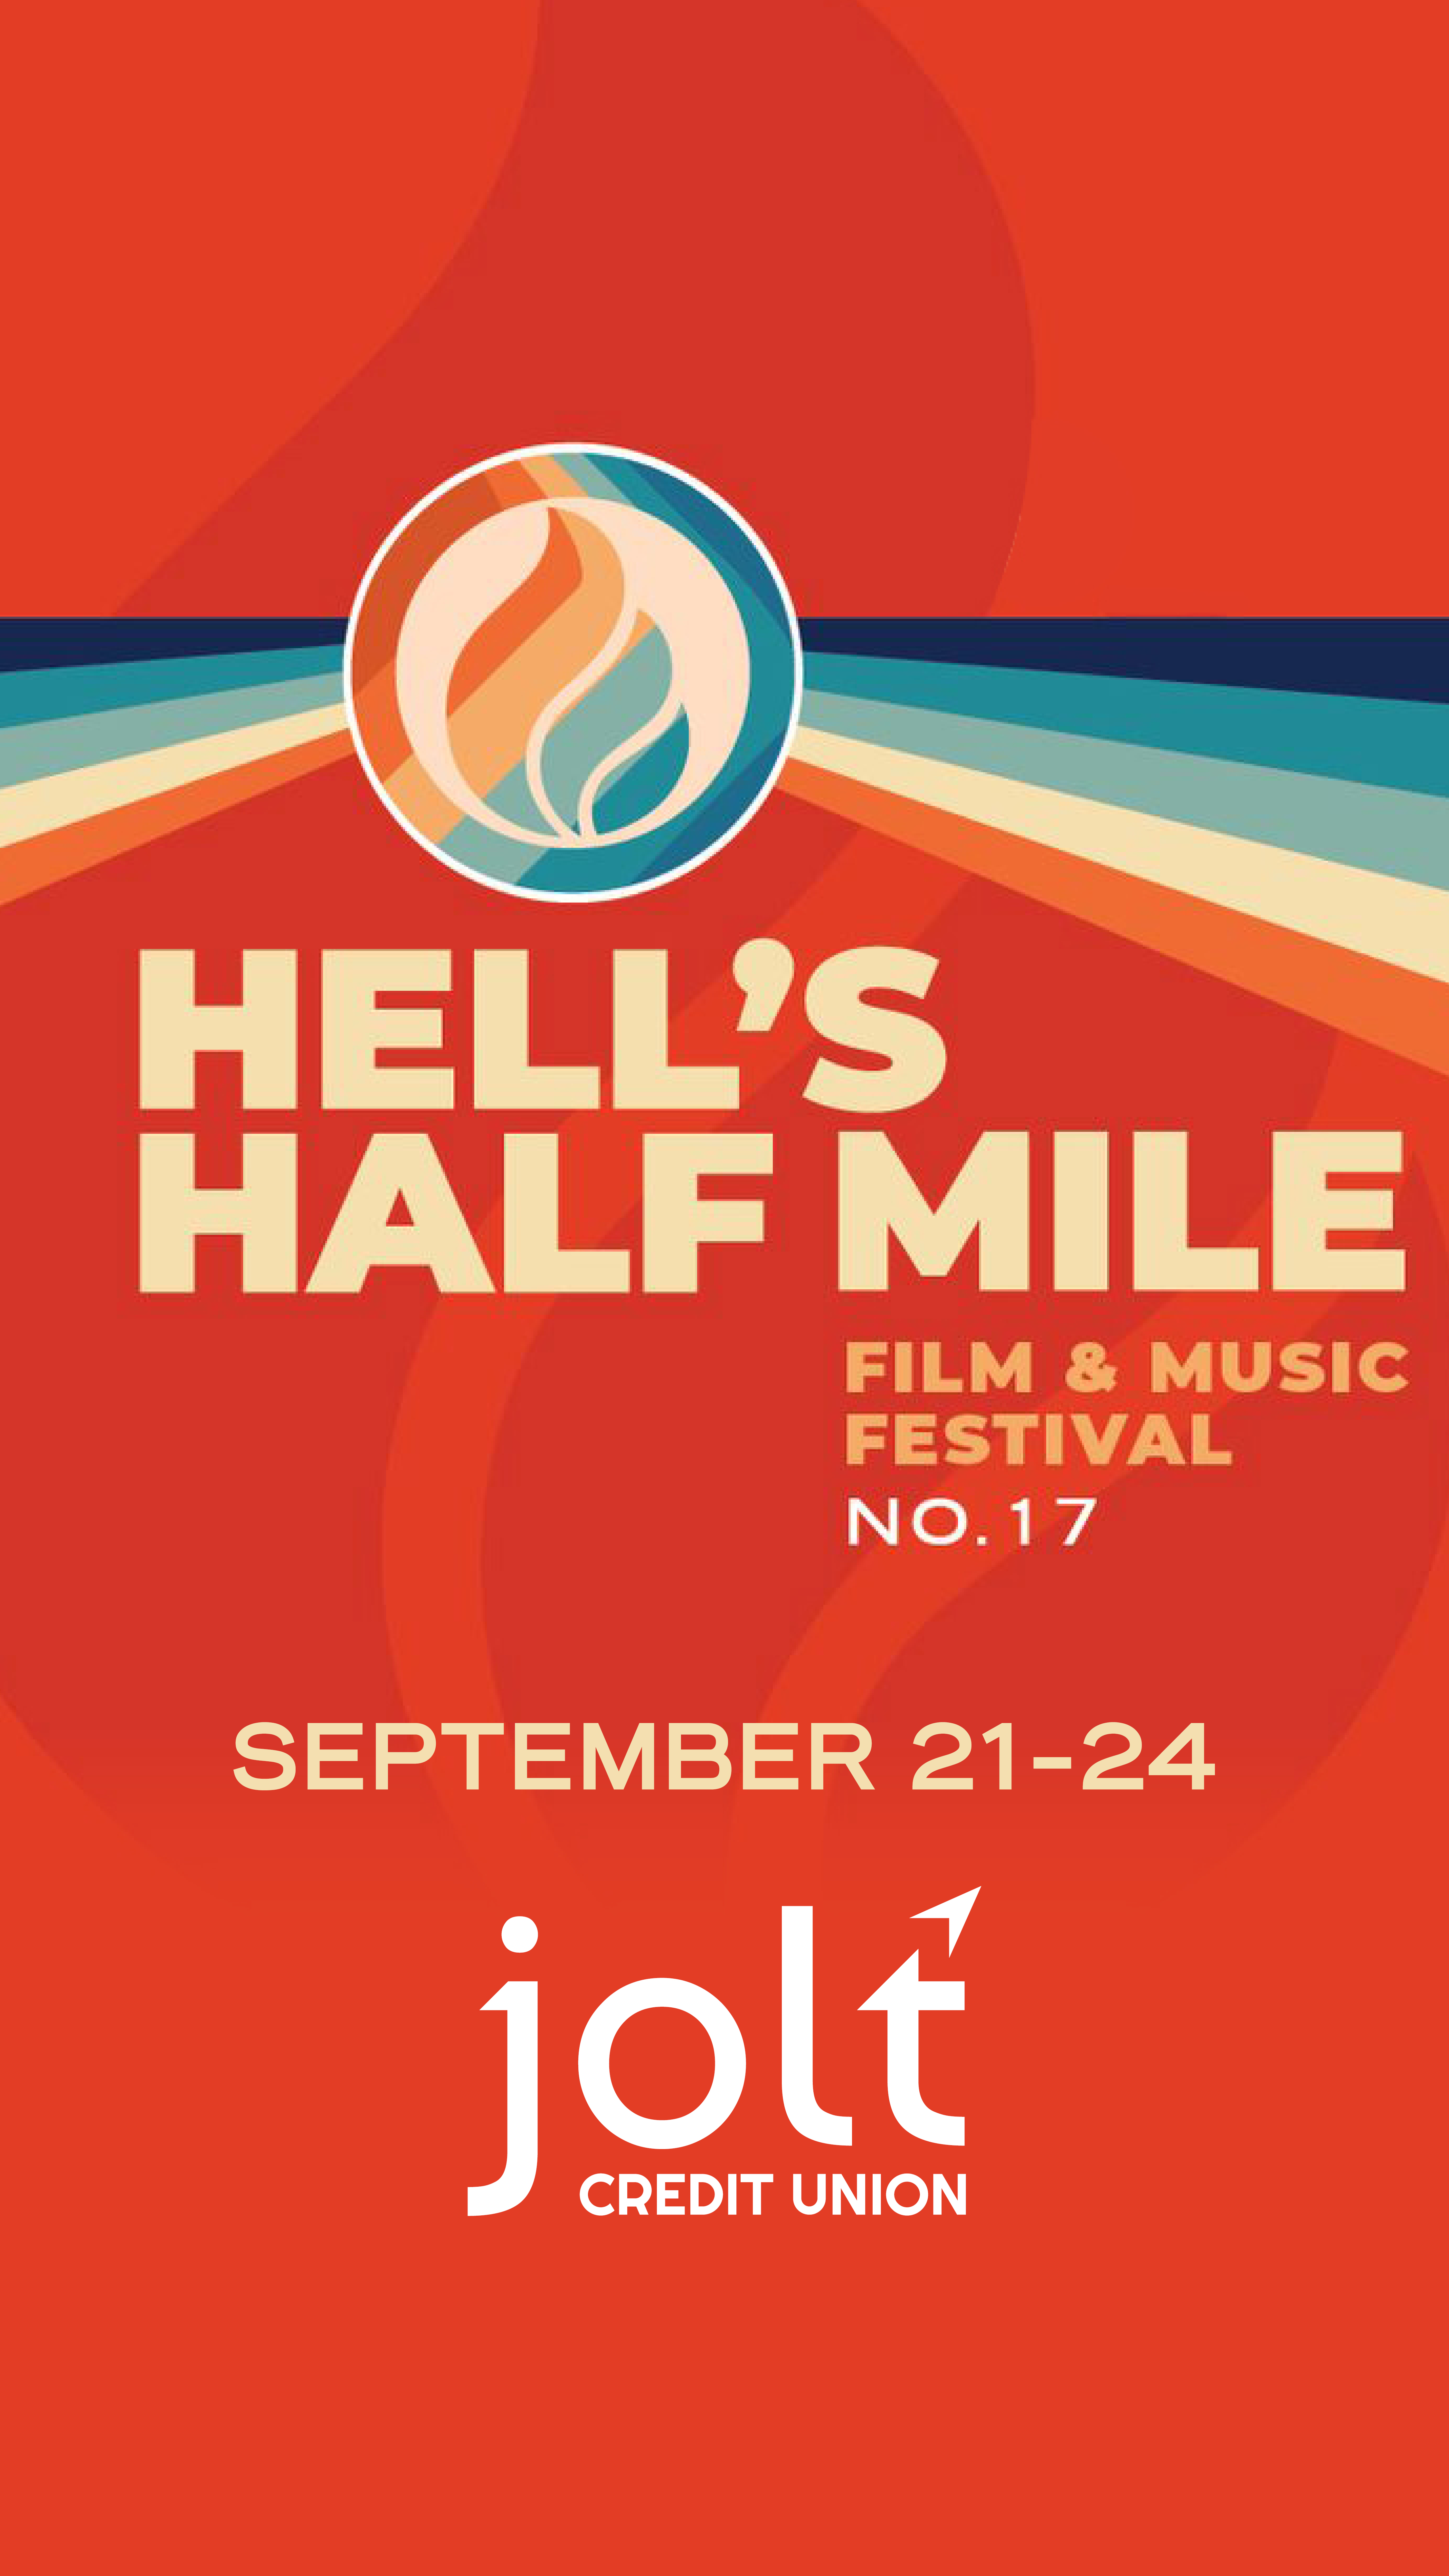 HELL'S HALF MILE FILM & MUSIC FESTIVAL. SEPTEMBER 21-24, 2023